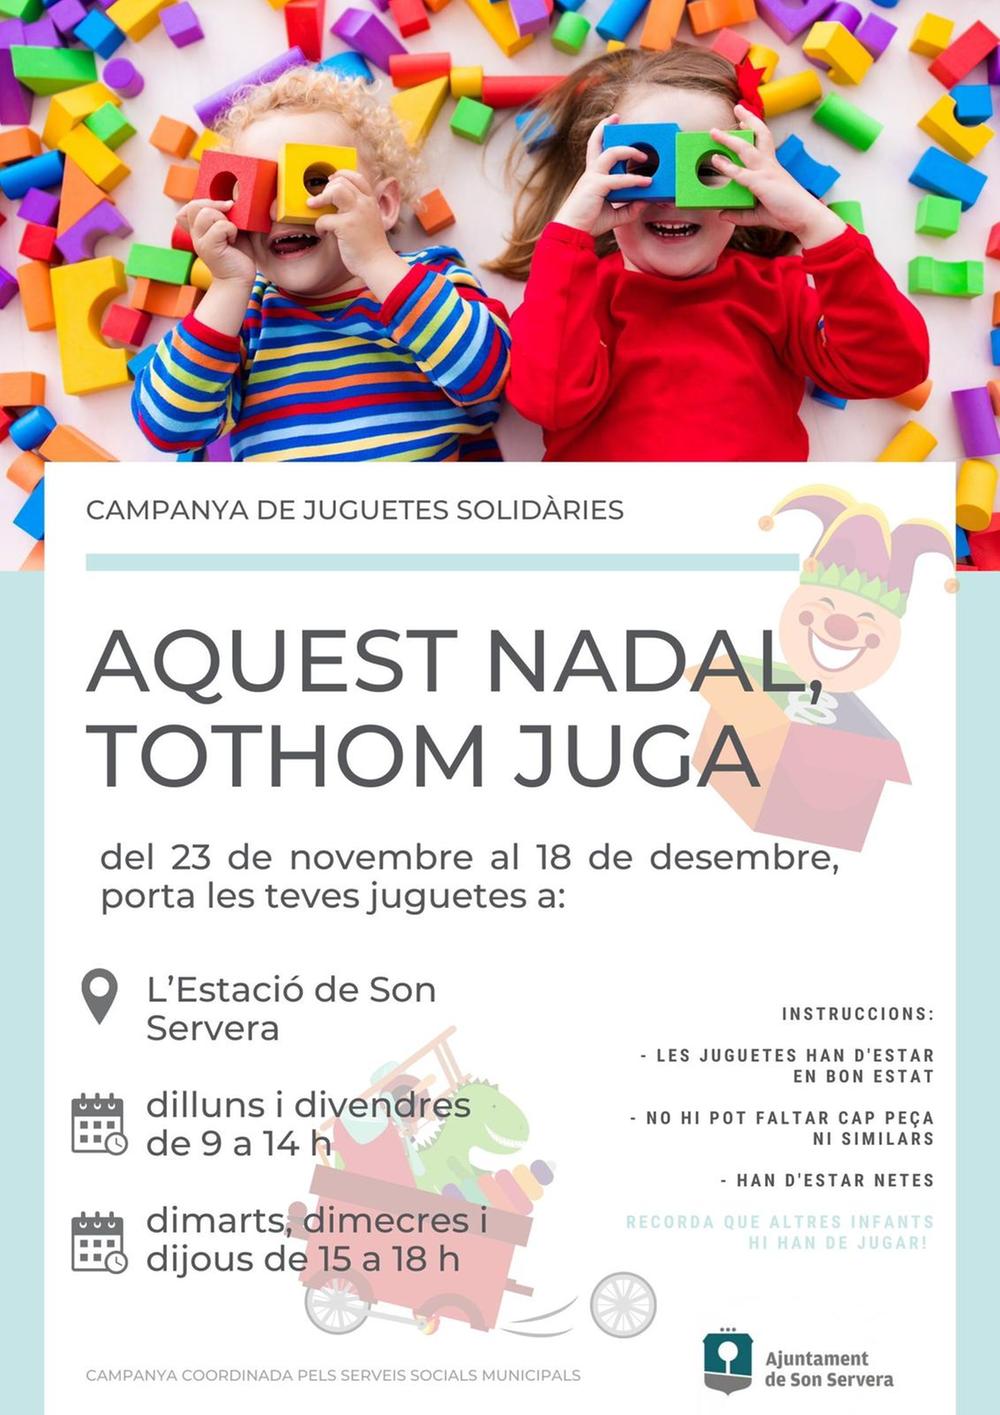 El Ayuntamiento de Son Servera empieza una campaa de juguetes solidarios para estas Navidades